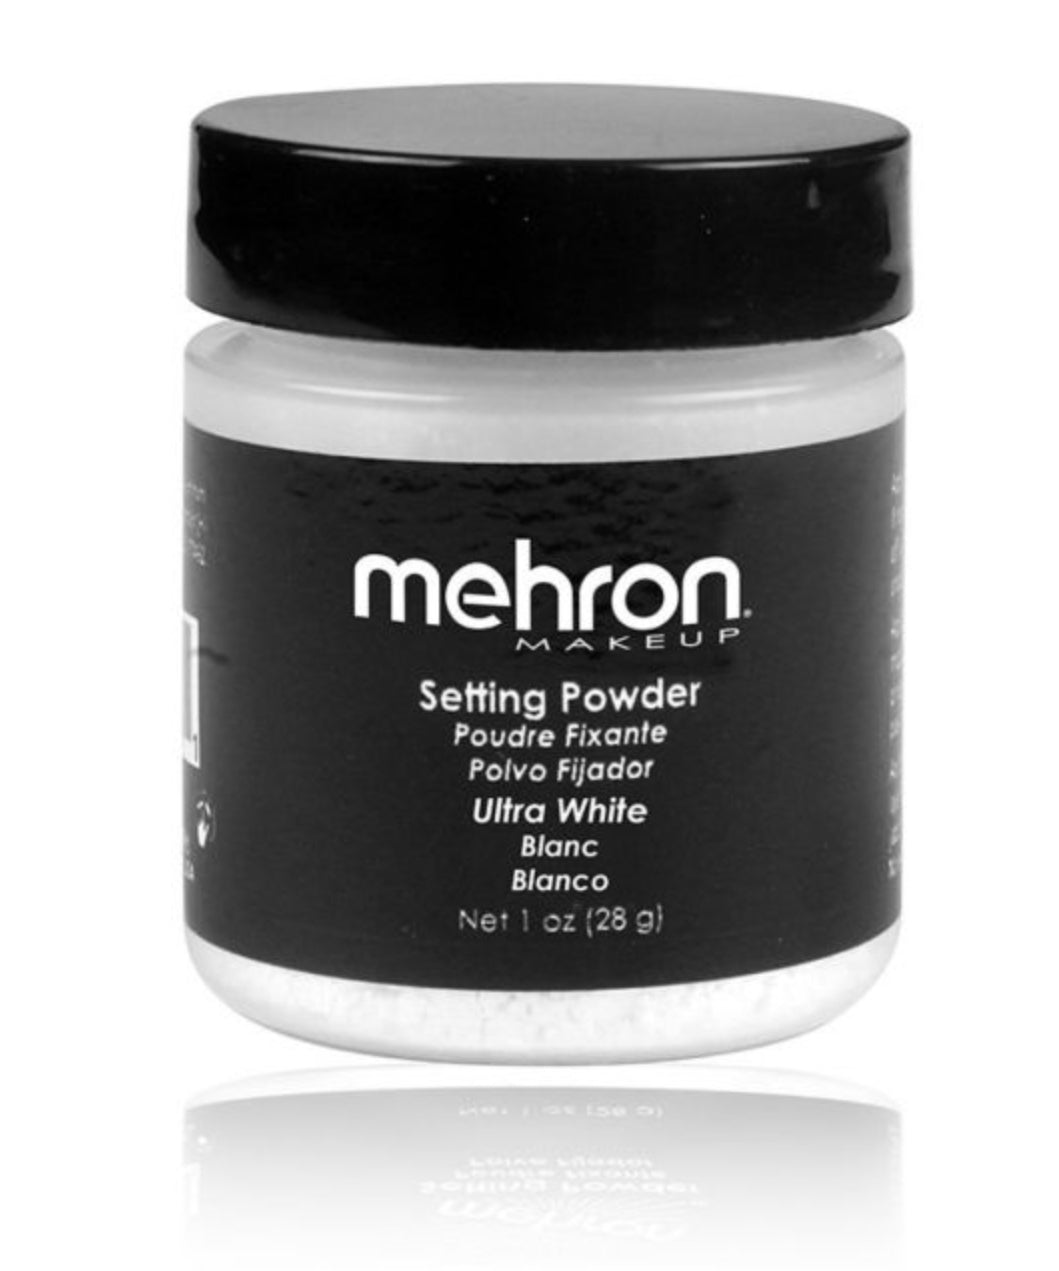 Mehron ultra white Setting Powder